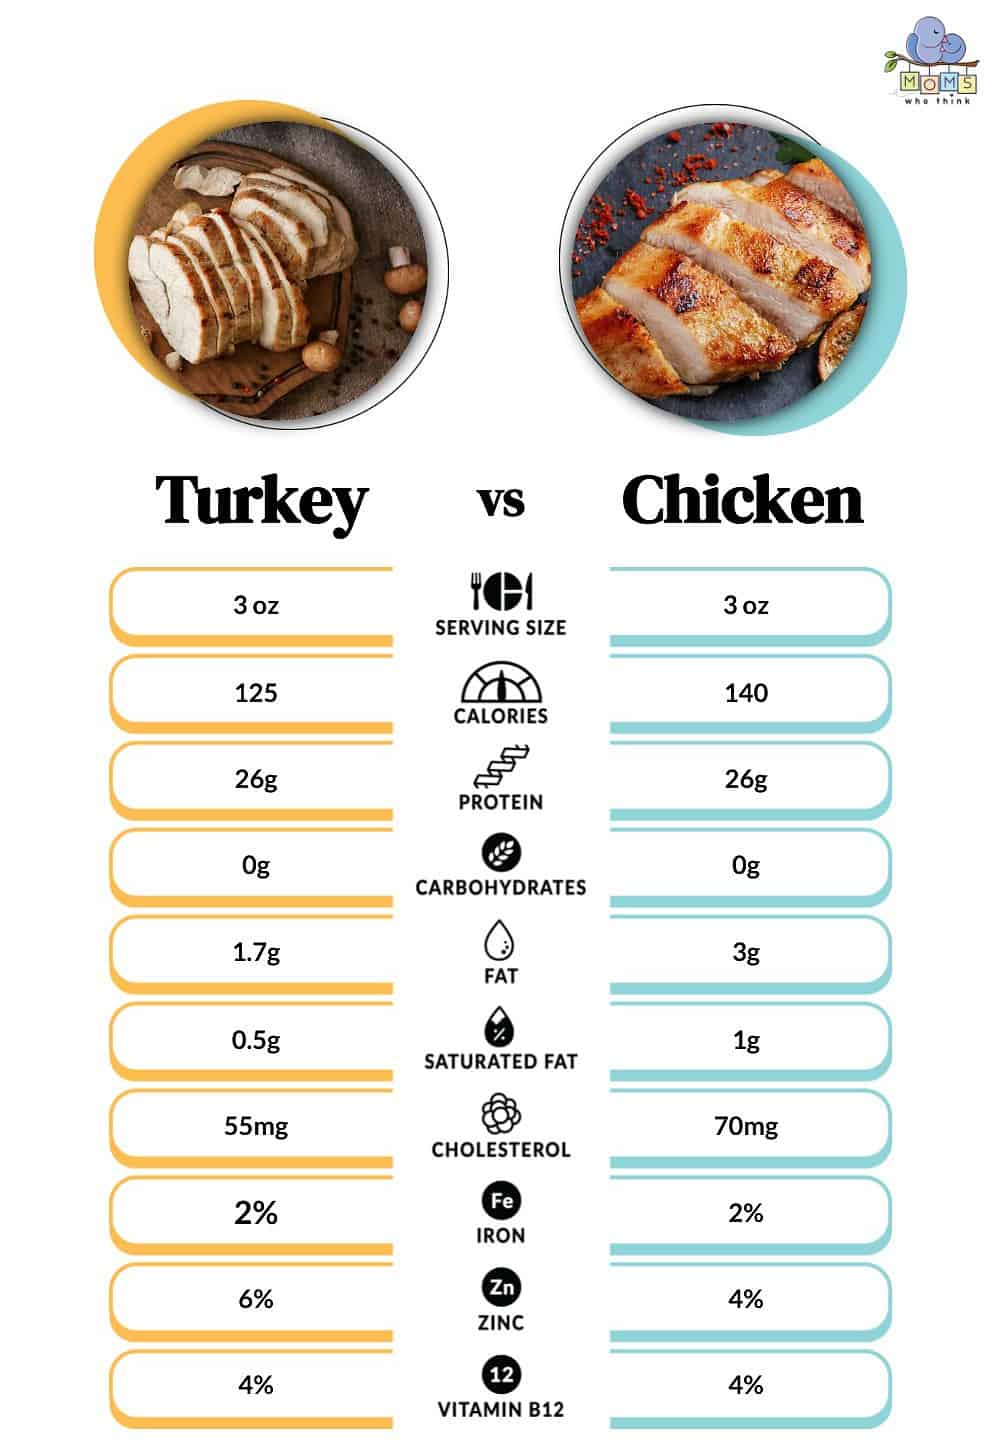 Turkey vs. Chicken nutritional information